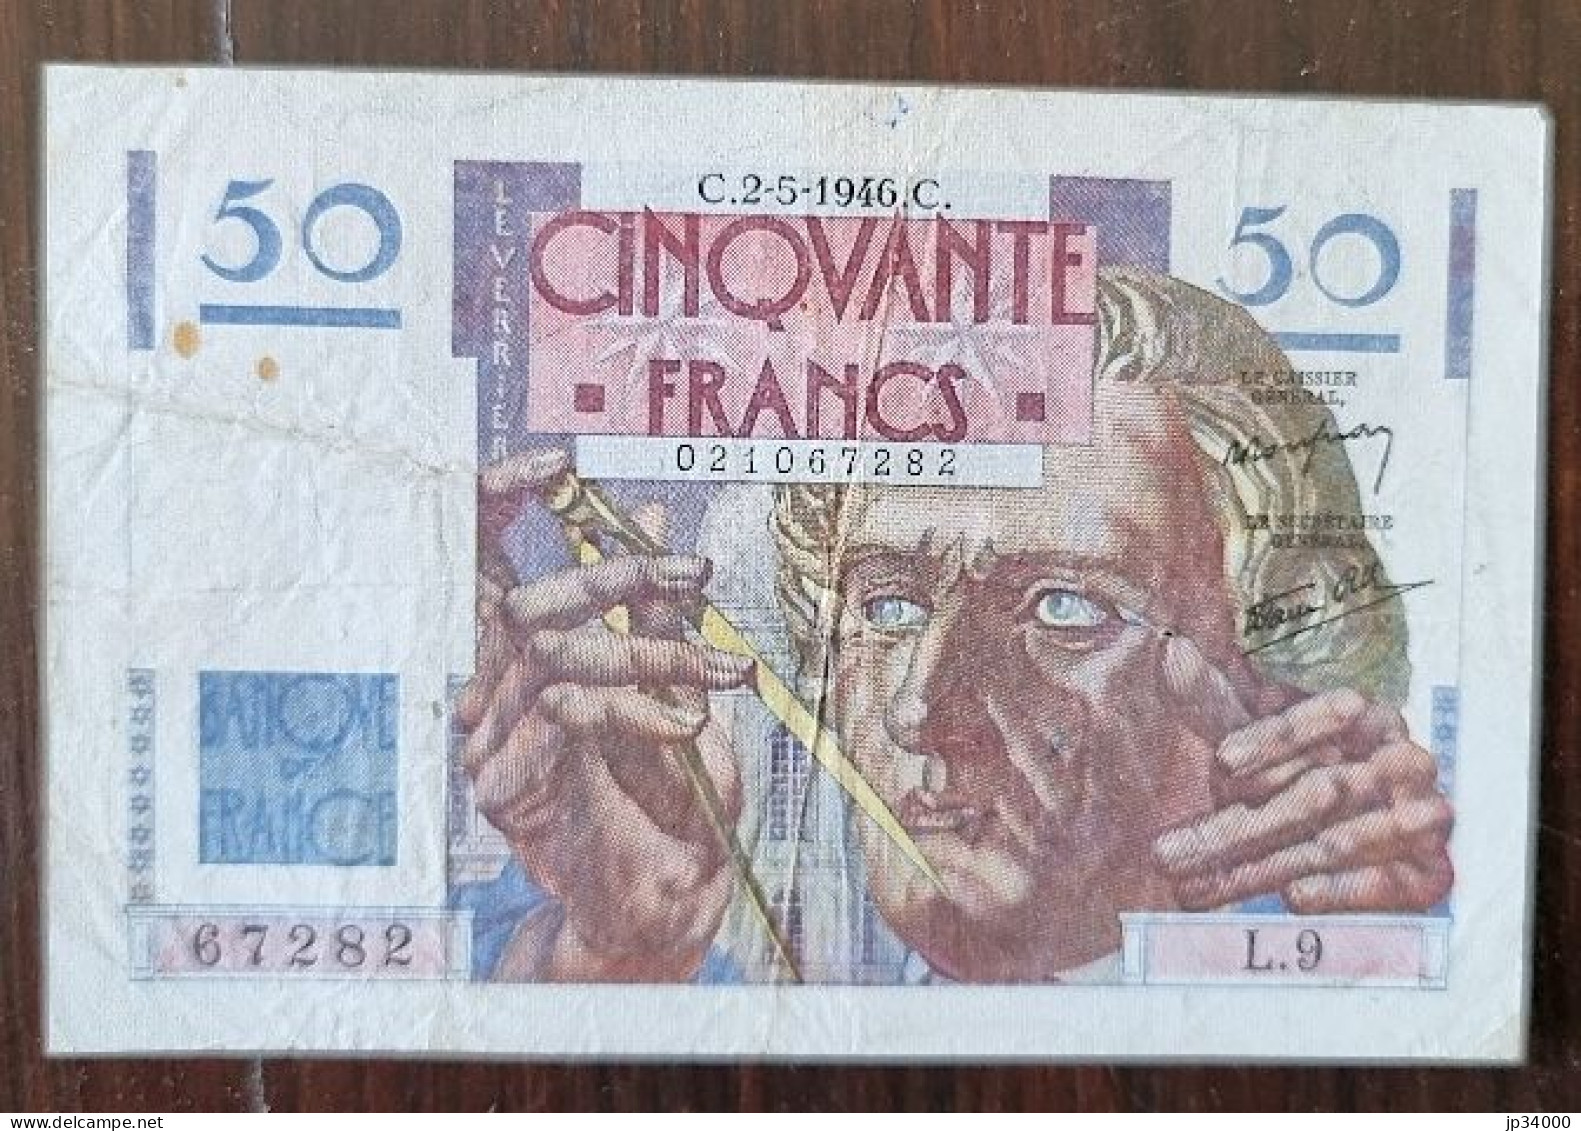 Billet 50 Francs LE VERRIER Du C.2-5-1946. C. (67282) - L.9 (la Photo Est Le Billet Vendu) - 50 F 1946-1951 ''Le Verrier''